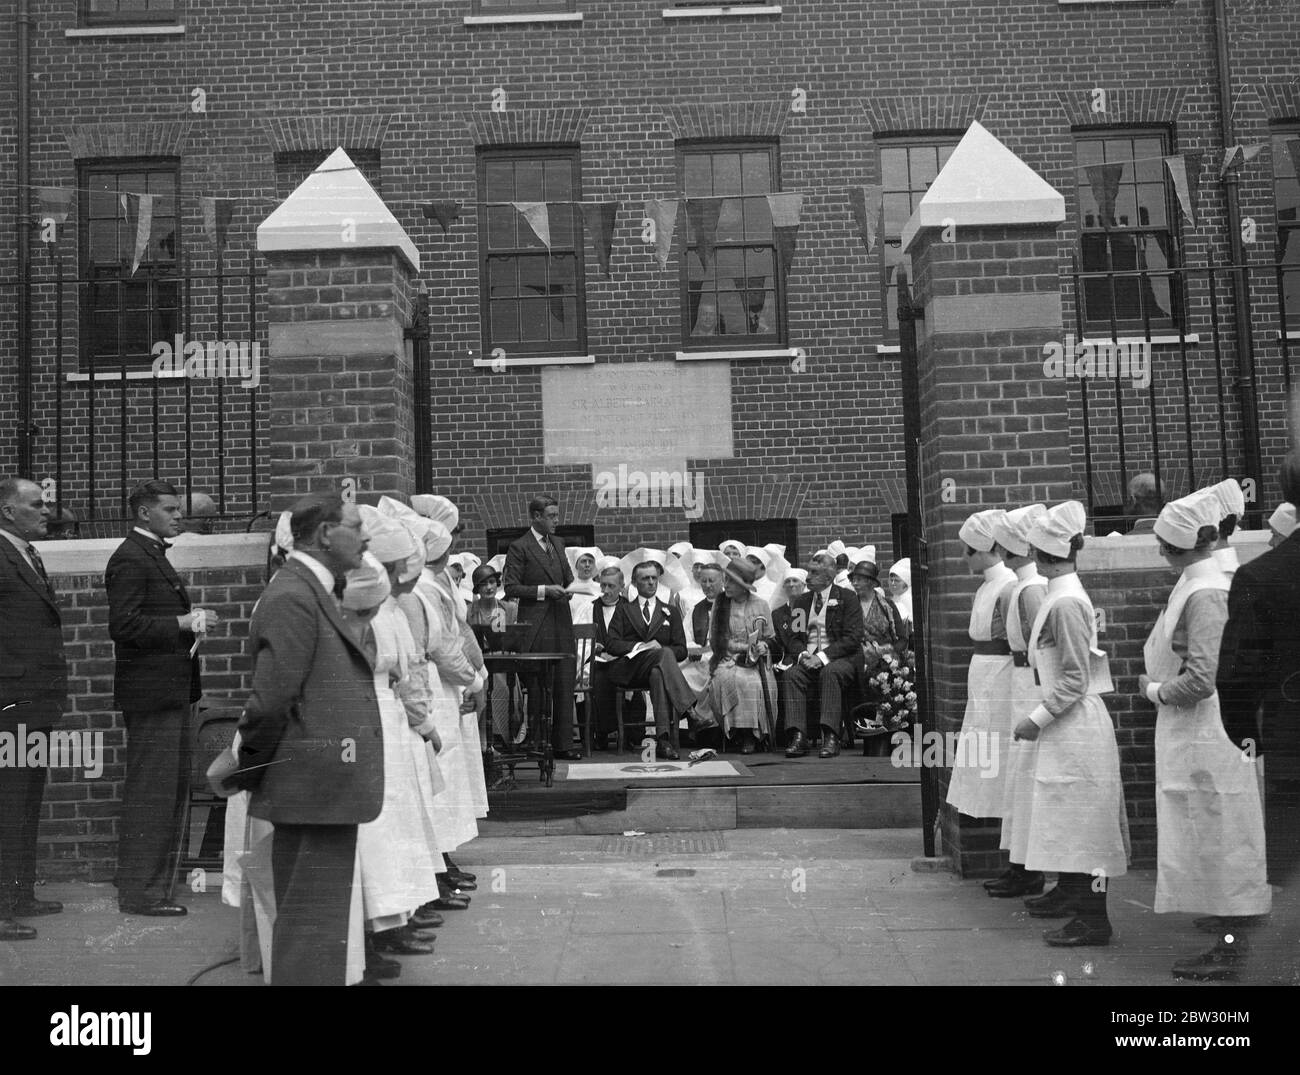 Prince de Galles à Tottenham . Le Prince de Galles a effectué une visite à Tottenham pour ouvrir le nouveau Casualty and Out patient , département de l' Hôpital général du Prince de Galles . Il a ensuite reçu des bourses pour le coût du bâtiment . Le Prince de Galles déclarant les nouveaux bâtiments ouverts lors de la cérémonie . 21 juillet 1932 Banque D'Images